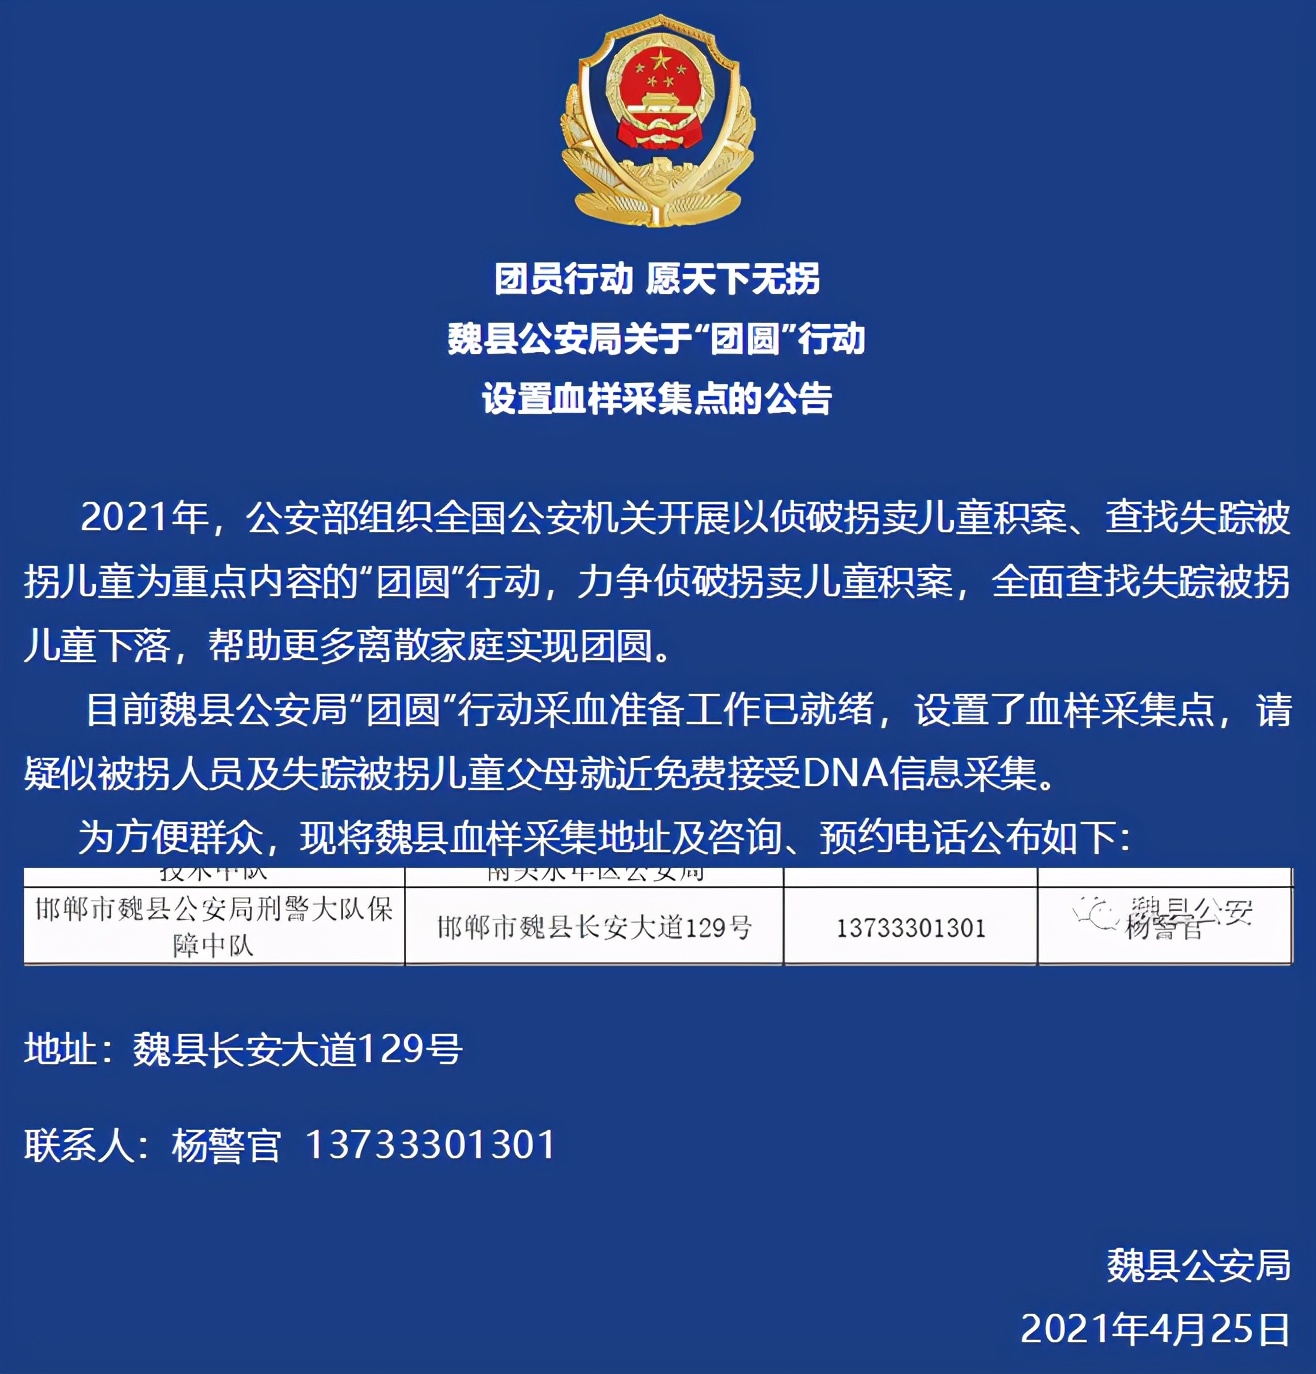 河北魏县公安局关于“团圆”行动设置血样采集点的公告